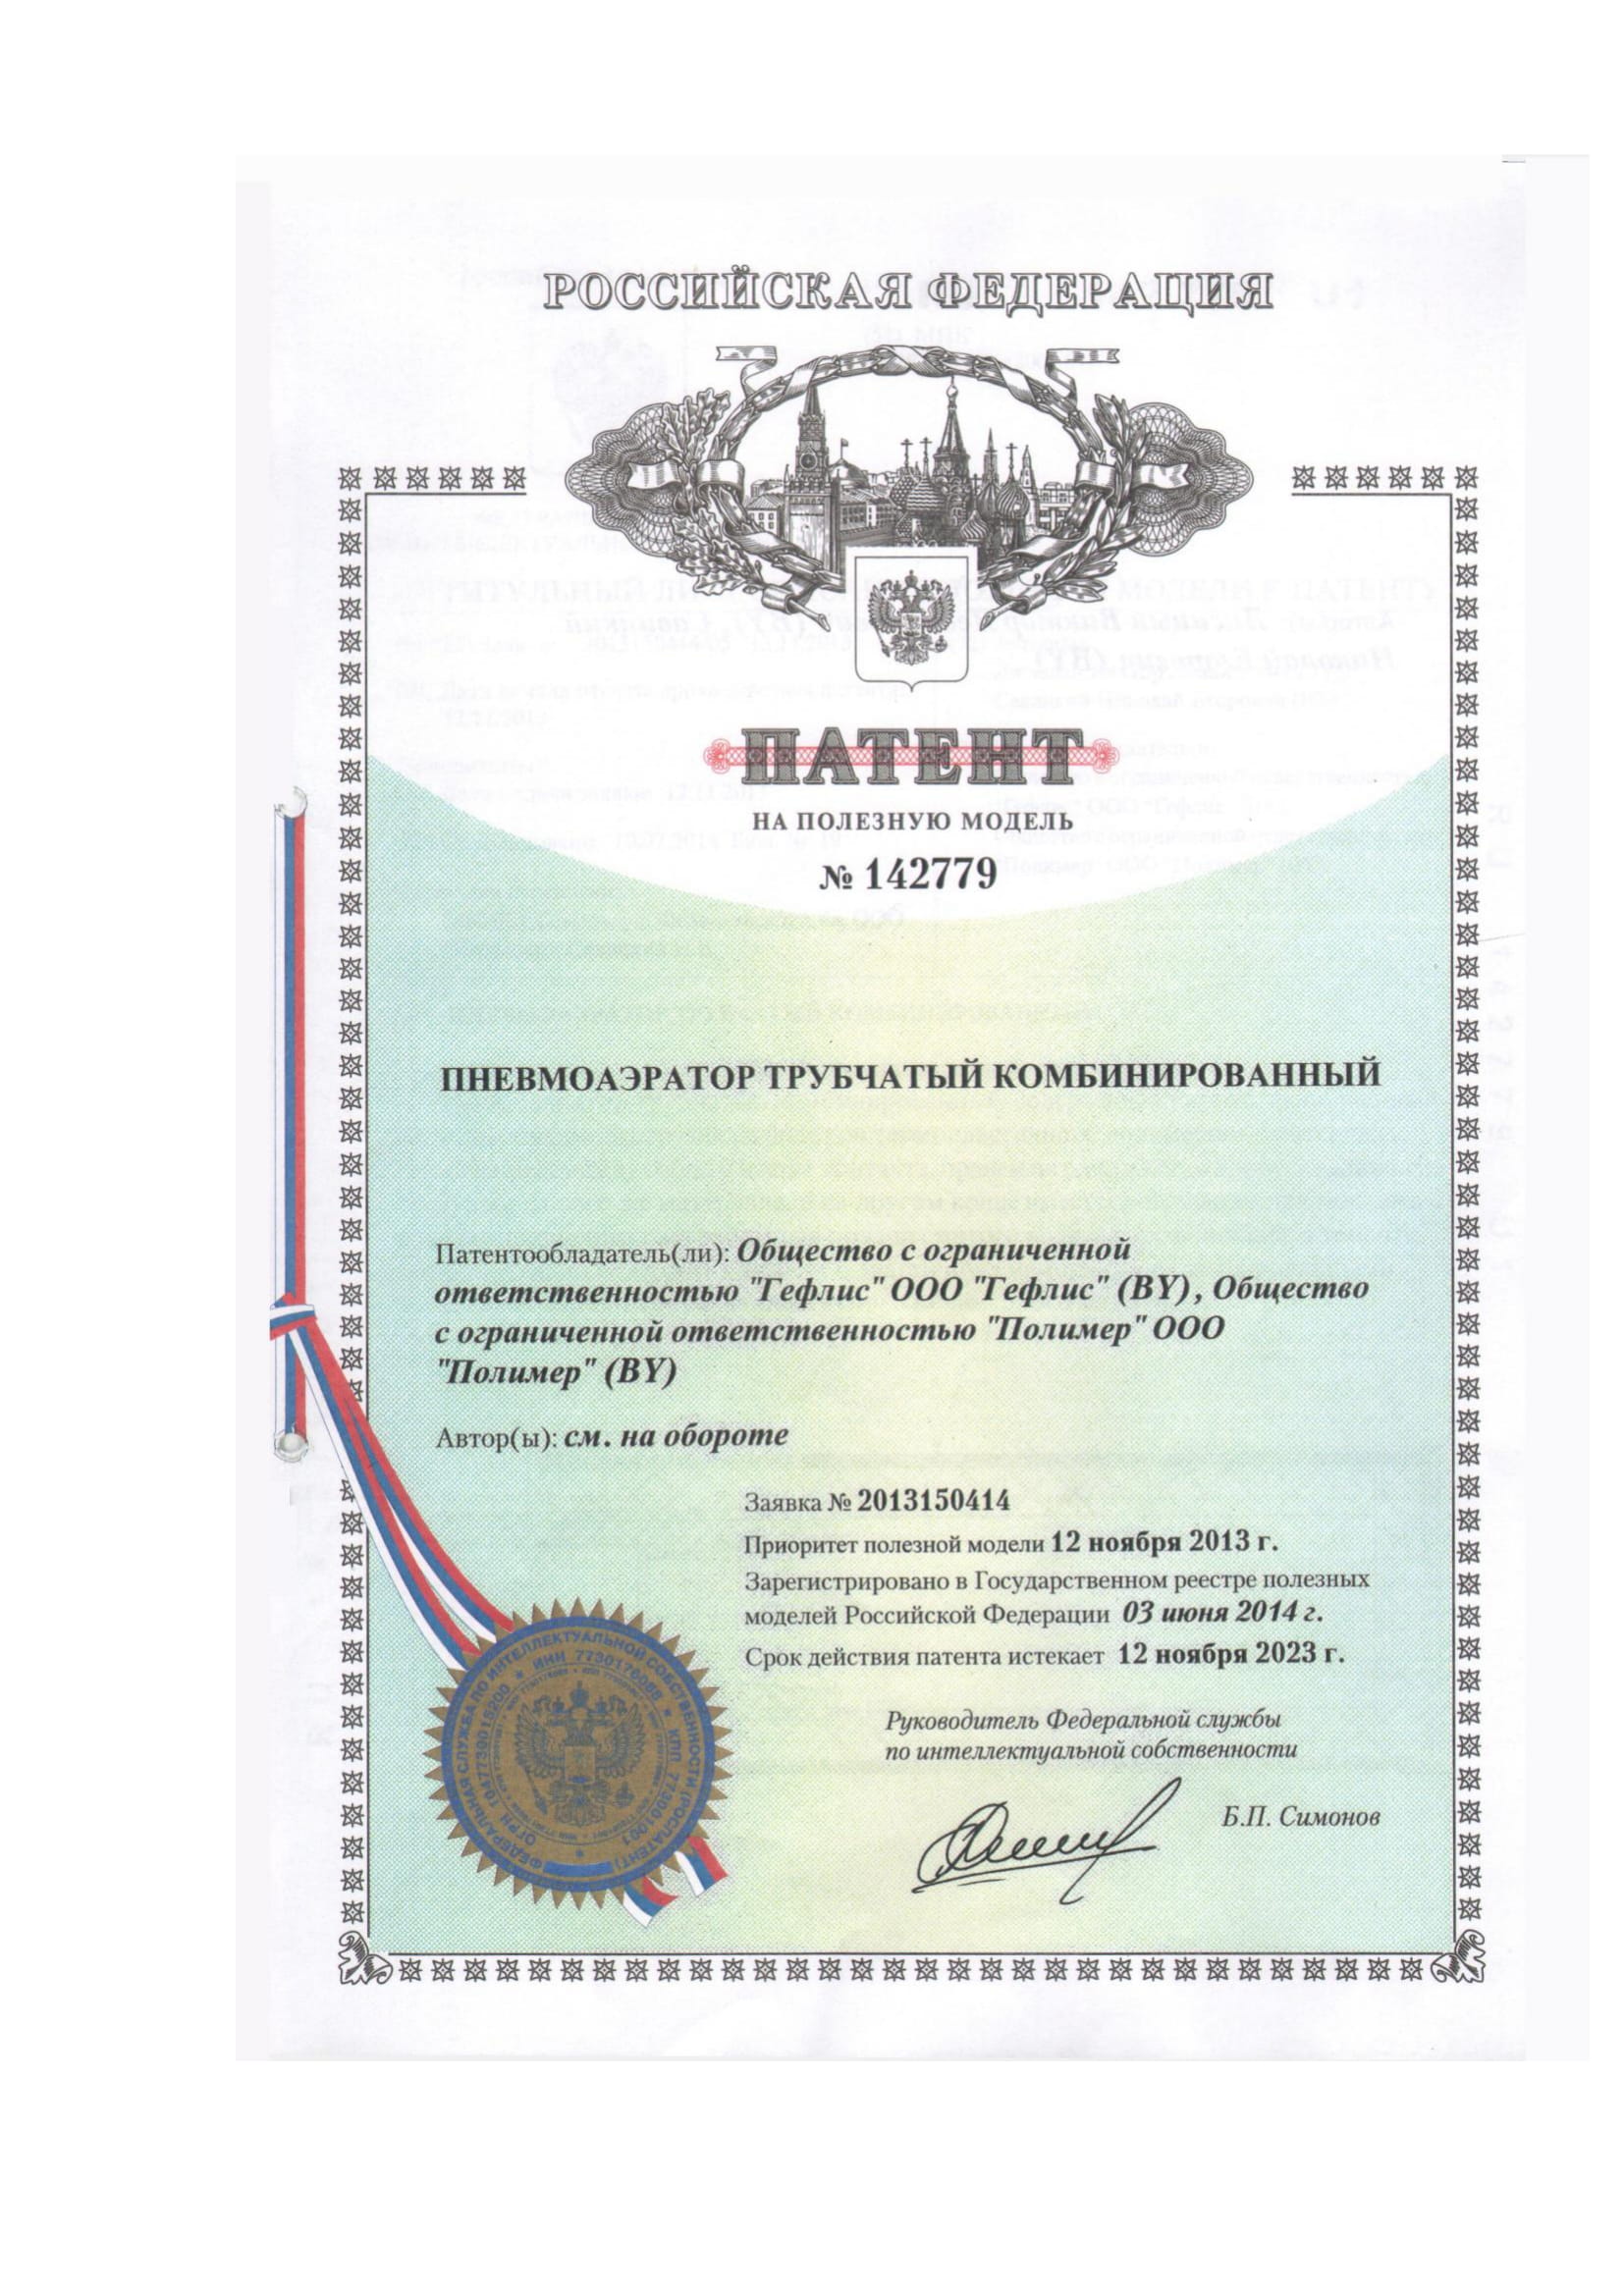 Патент №142779 РФ ПАТ к 1